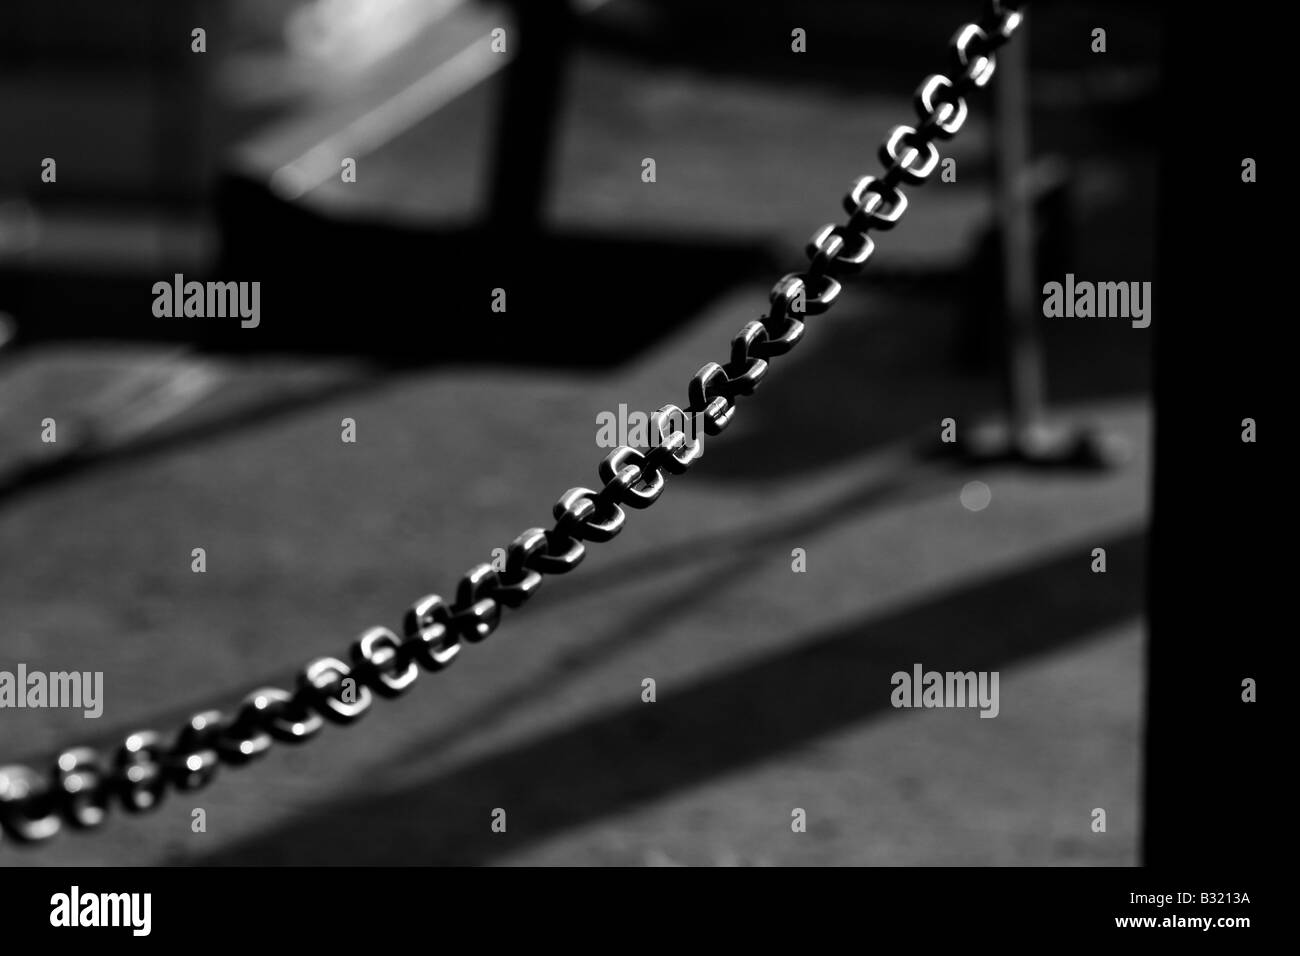 Geländer-Kette Stockfotografie - Alamy